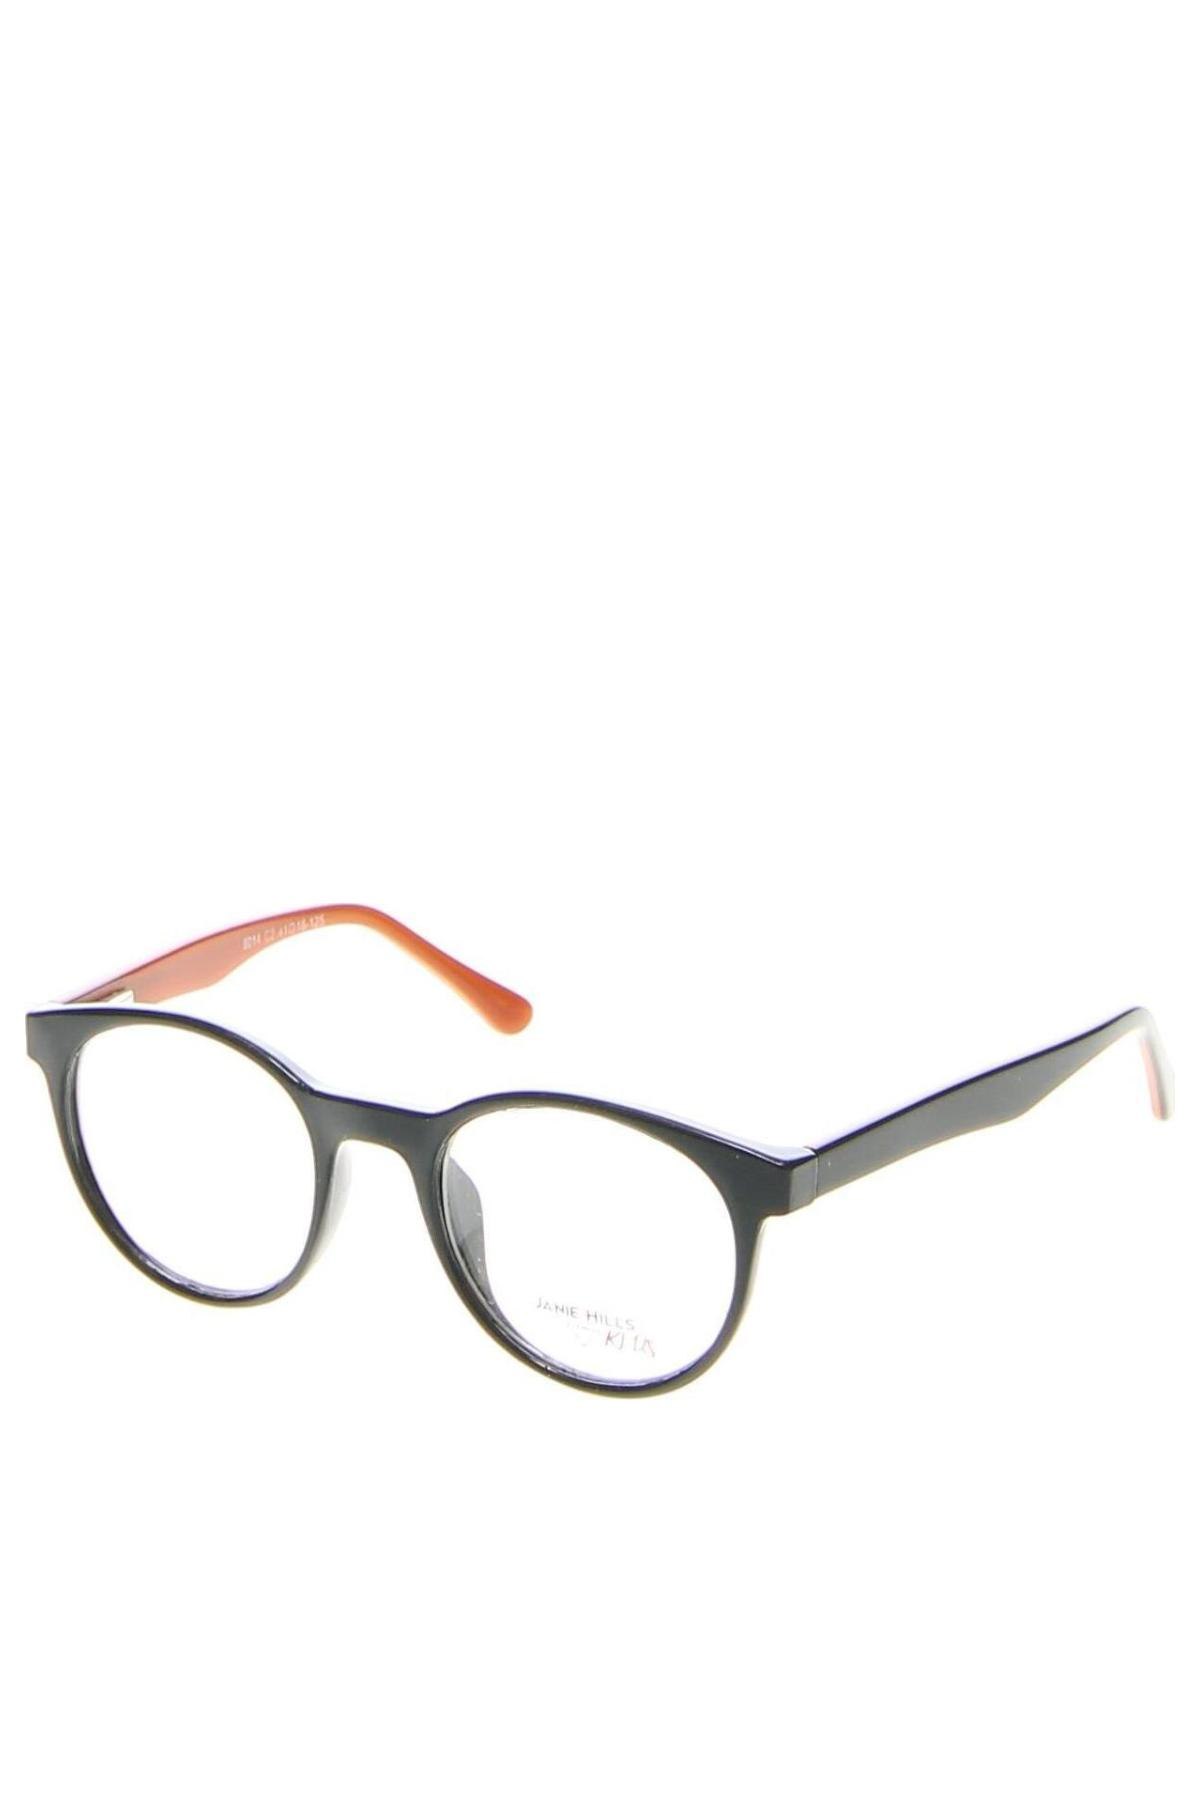 Gyerek szemüvegkeret Janie Hills, Szín Fekete, Ár 11 525 Ft